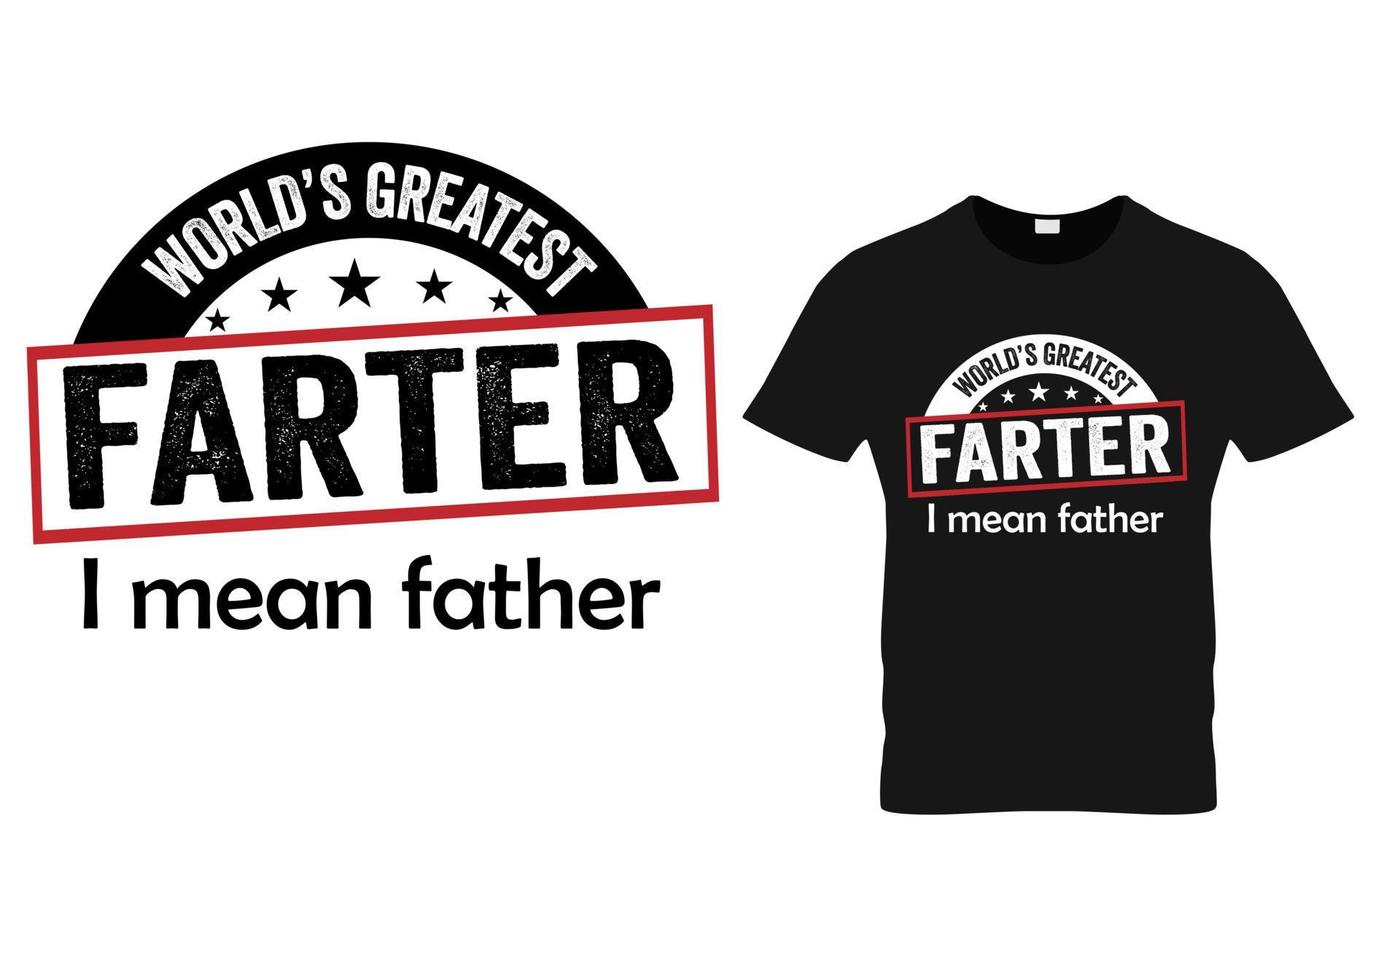 världens största farter jag menar far. pappa t-shirt design vektor